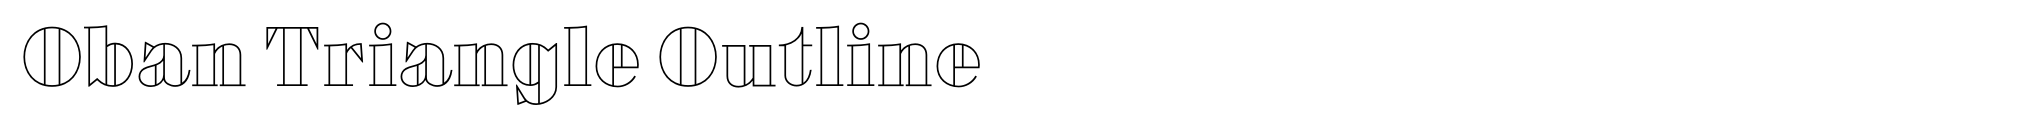 Oban Triangle Outline image